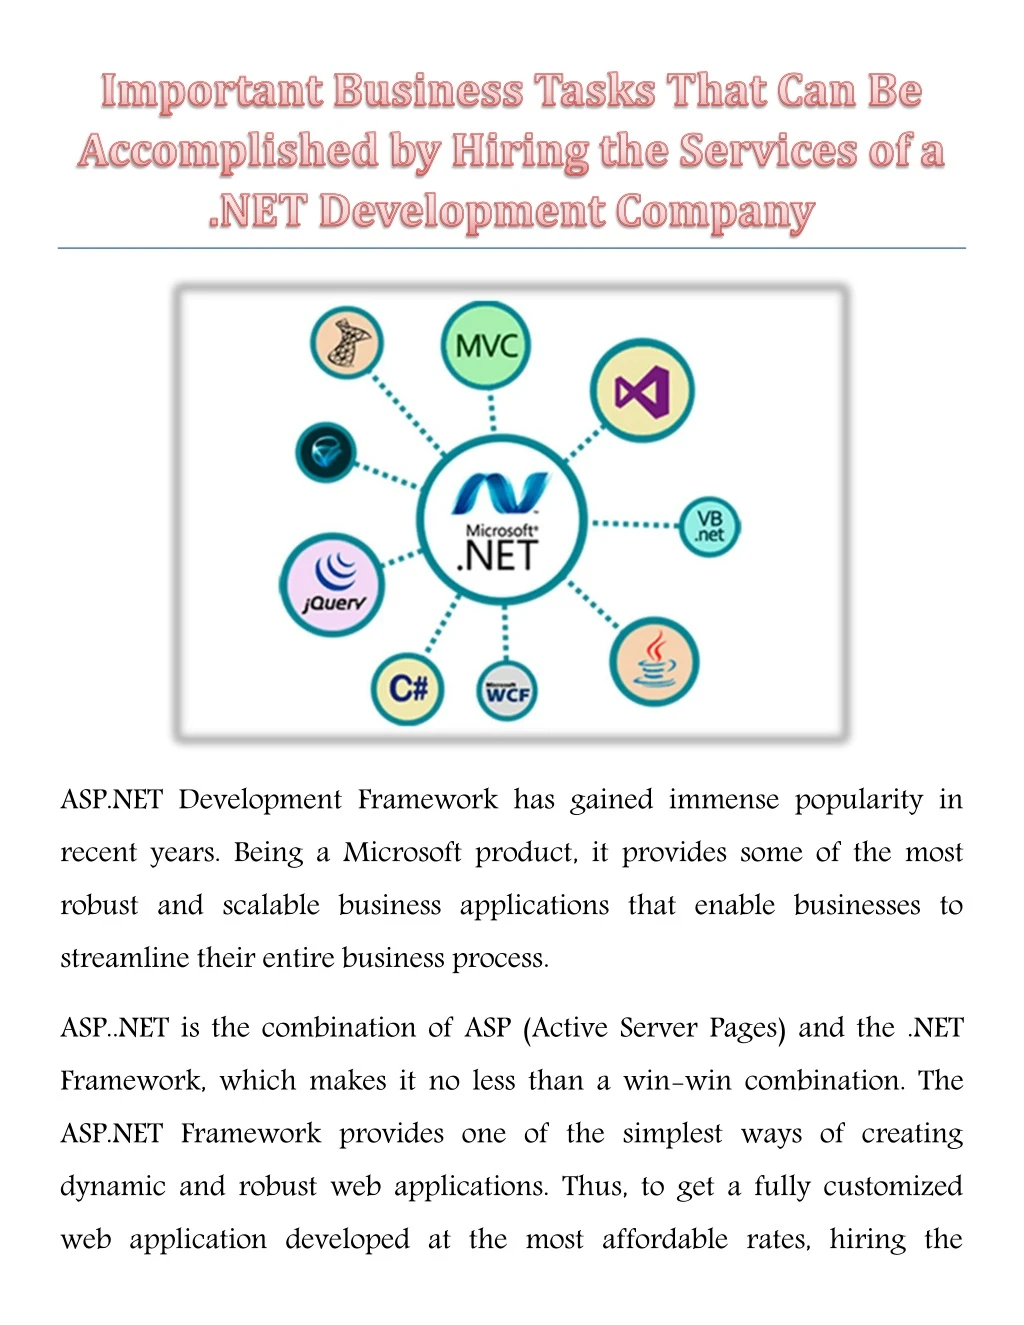 asp net development framework has gained immense